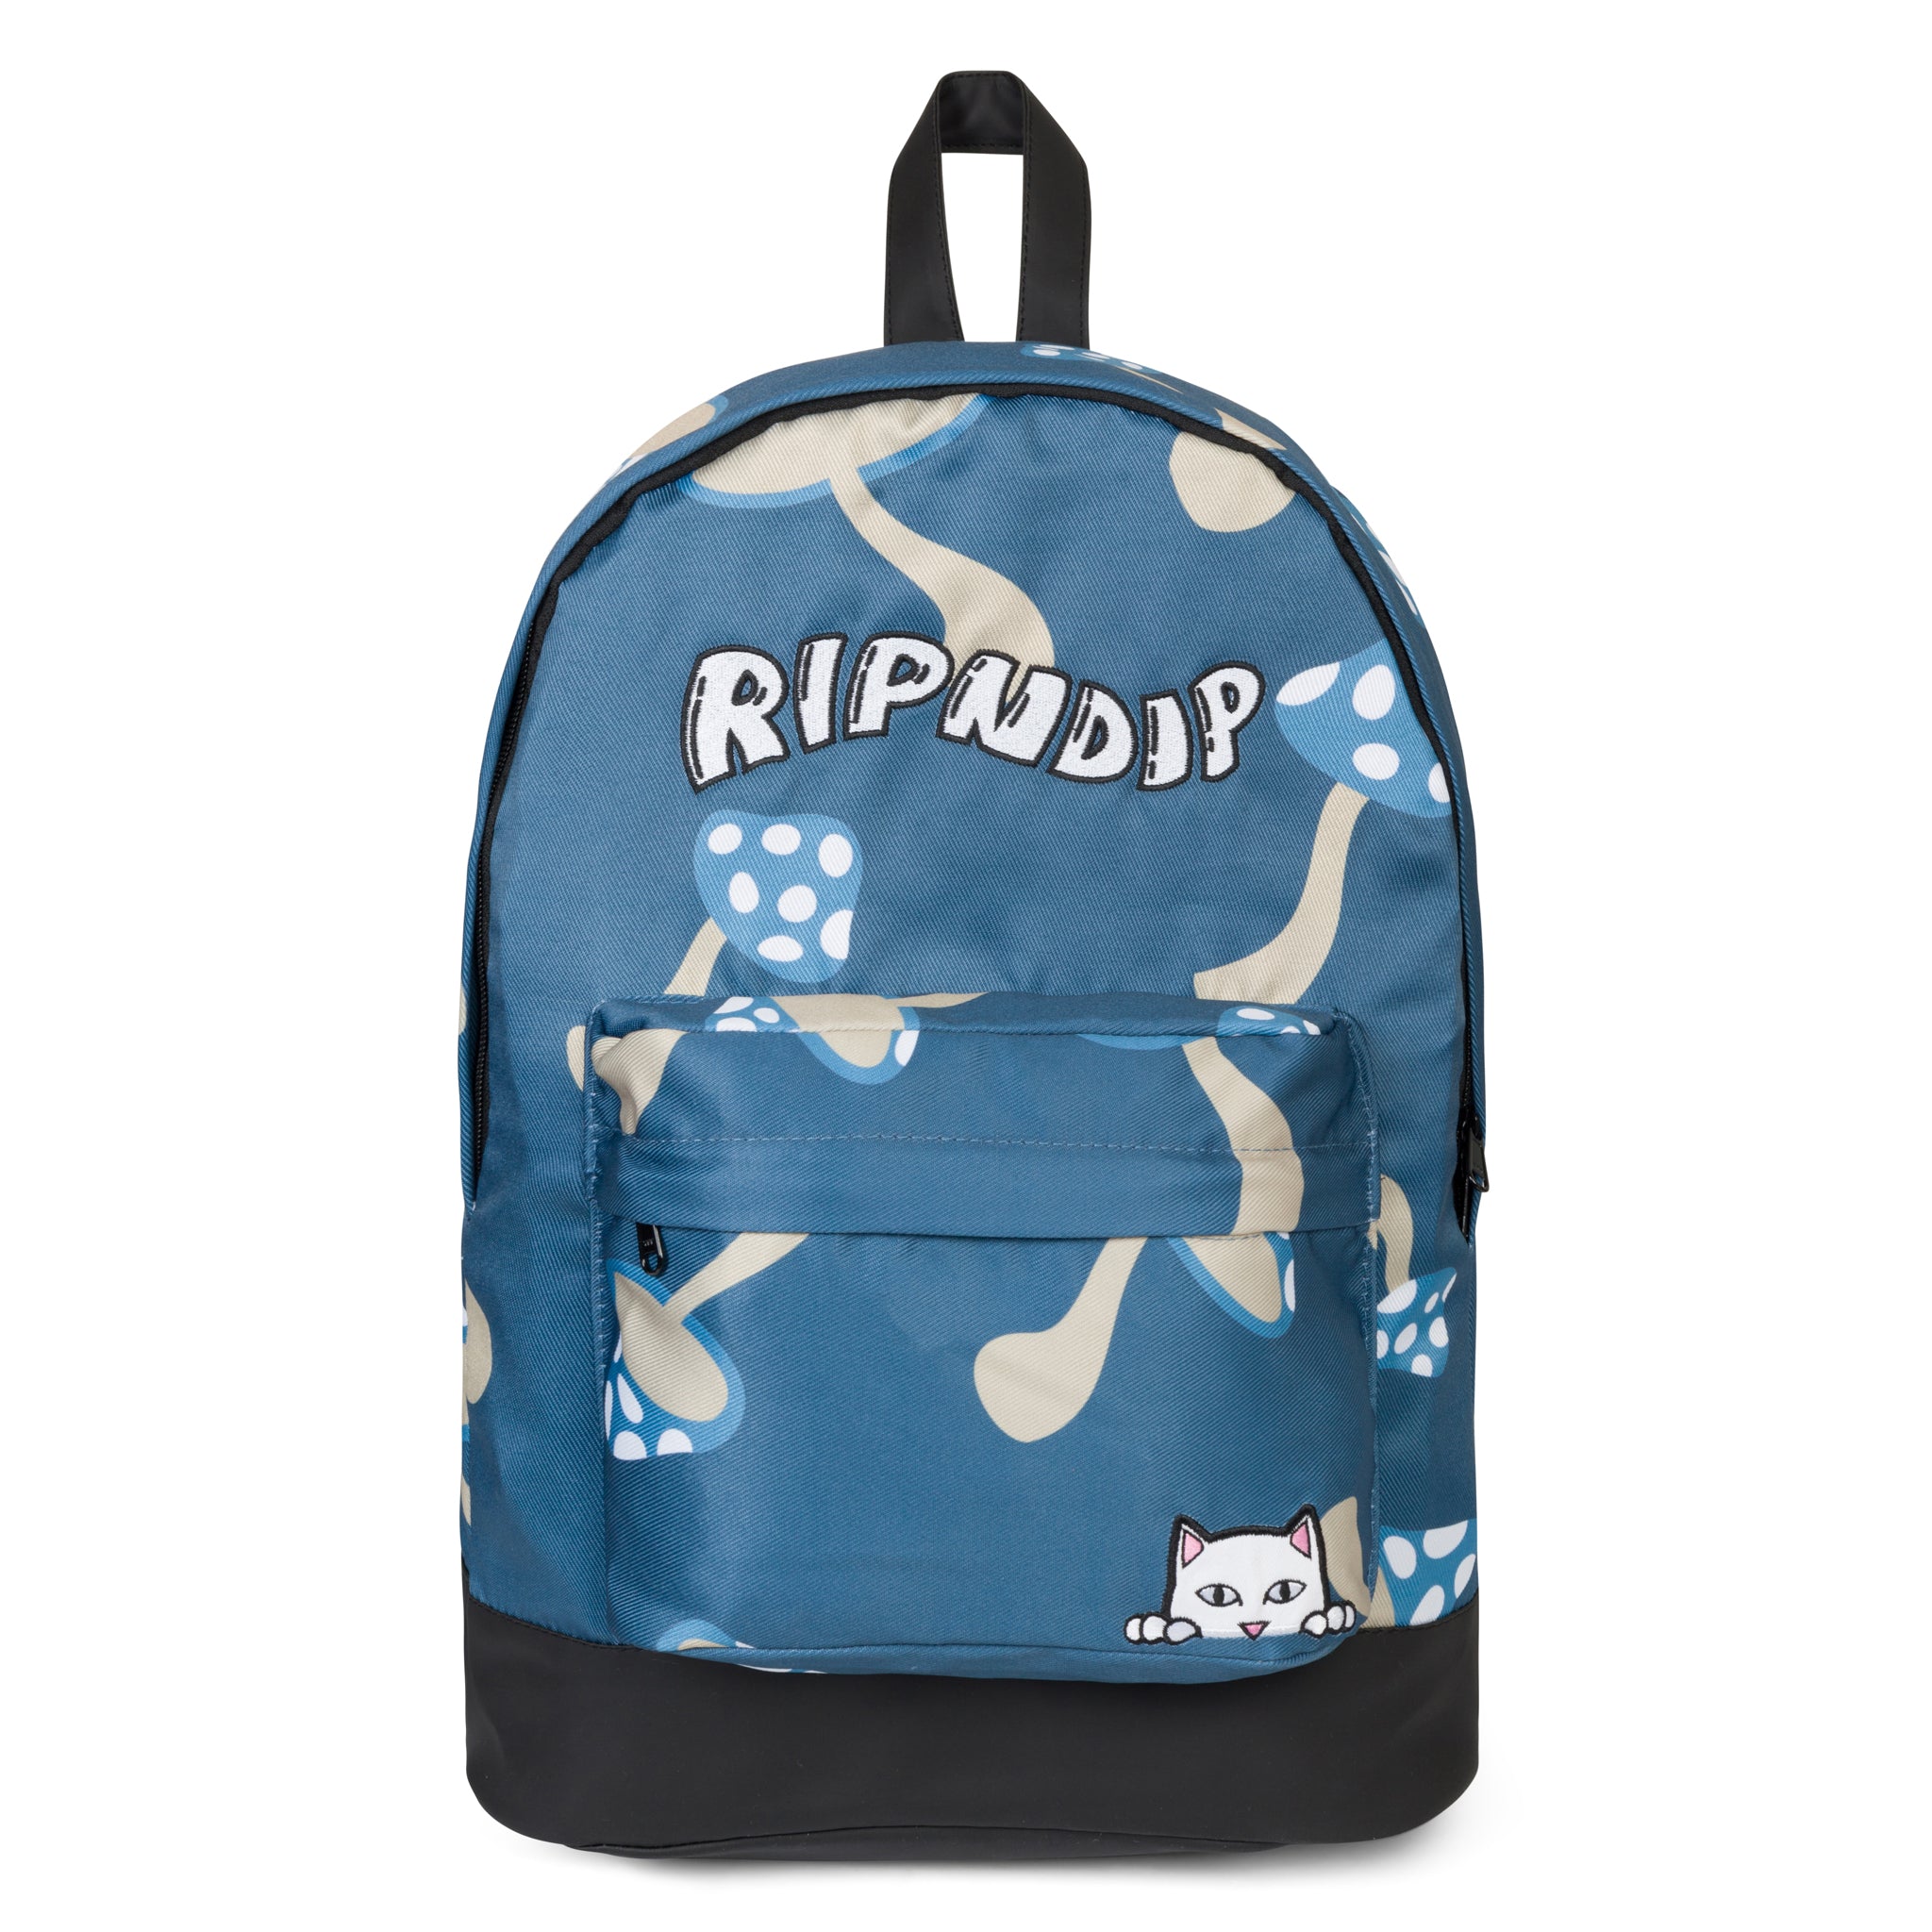 Ripndip - Bags, Backpacks, & Totes - Ripndip.com – RIPNDIP